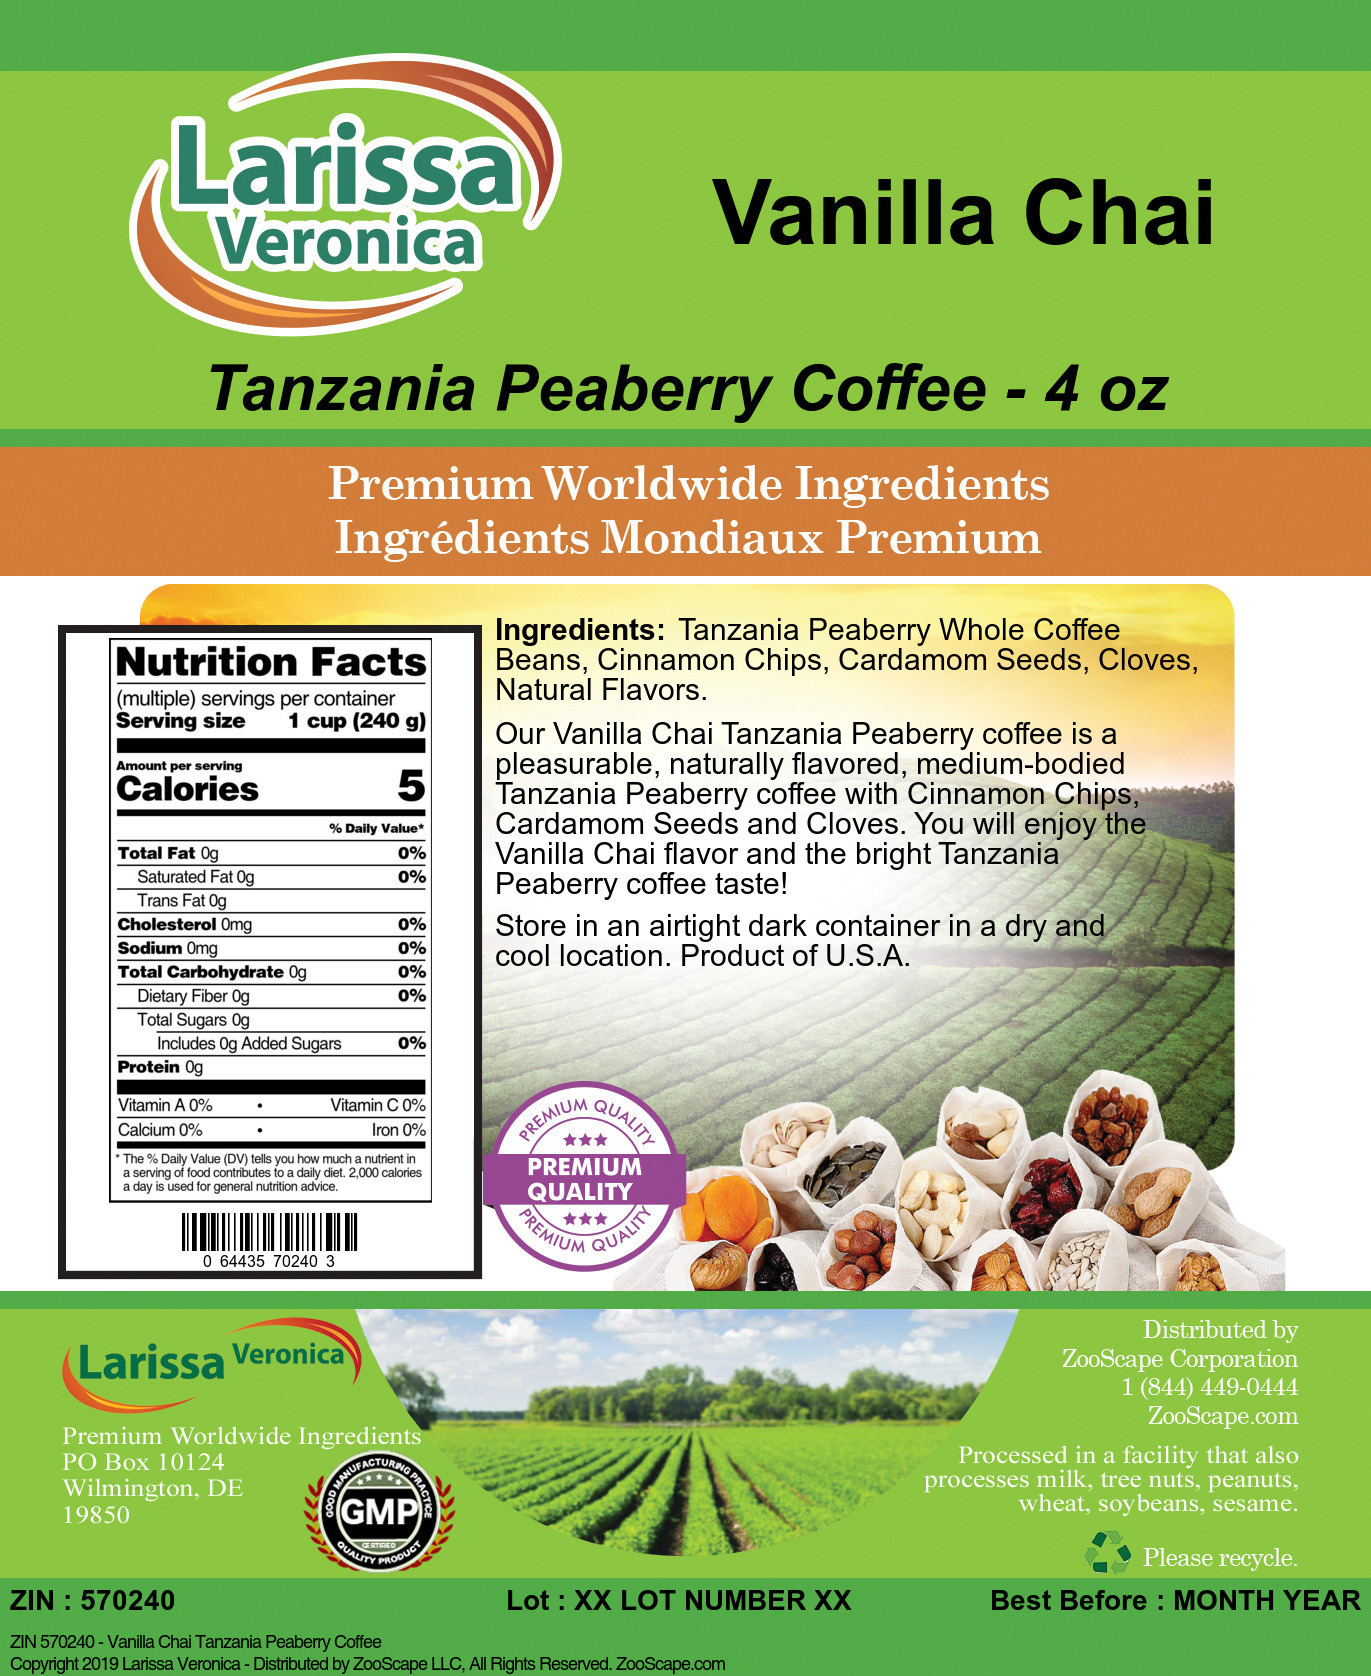 Vanilla Chai Tanzania Peaberry Coffee - Label